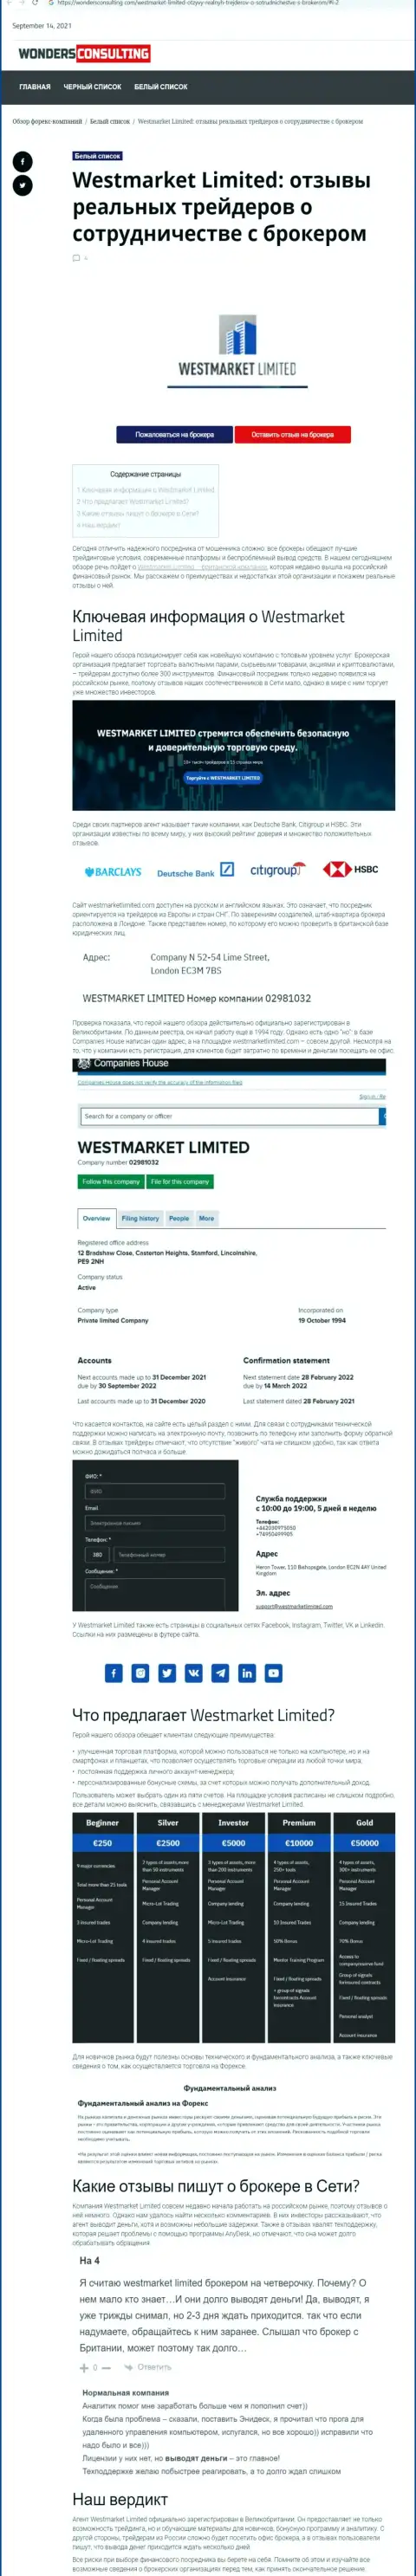 Обзорная статья о forex компании West Market Limited на сайте вондерконсалтинг ком